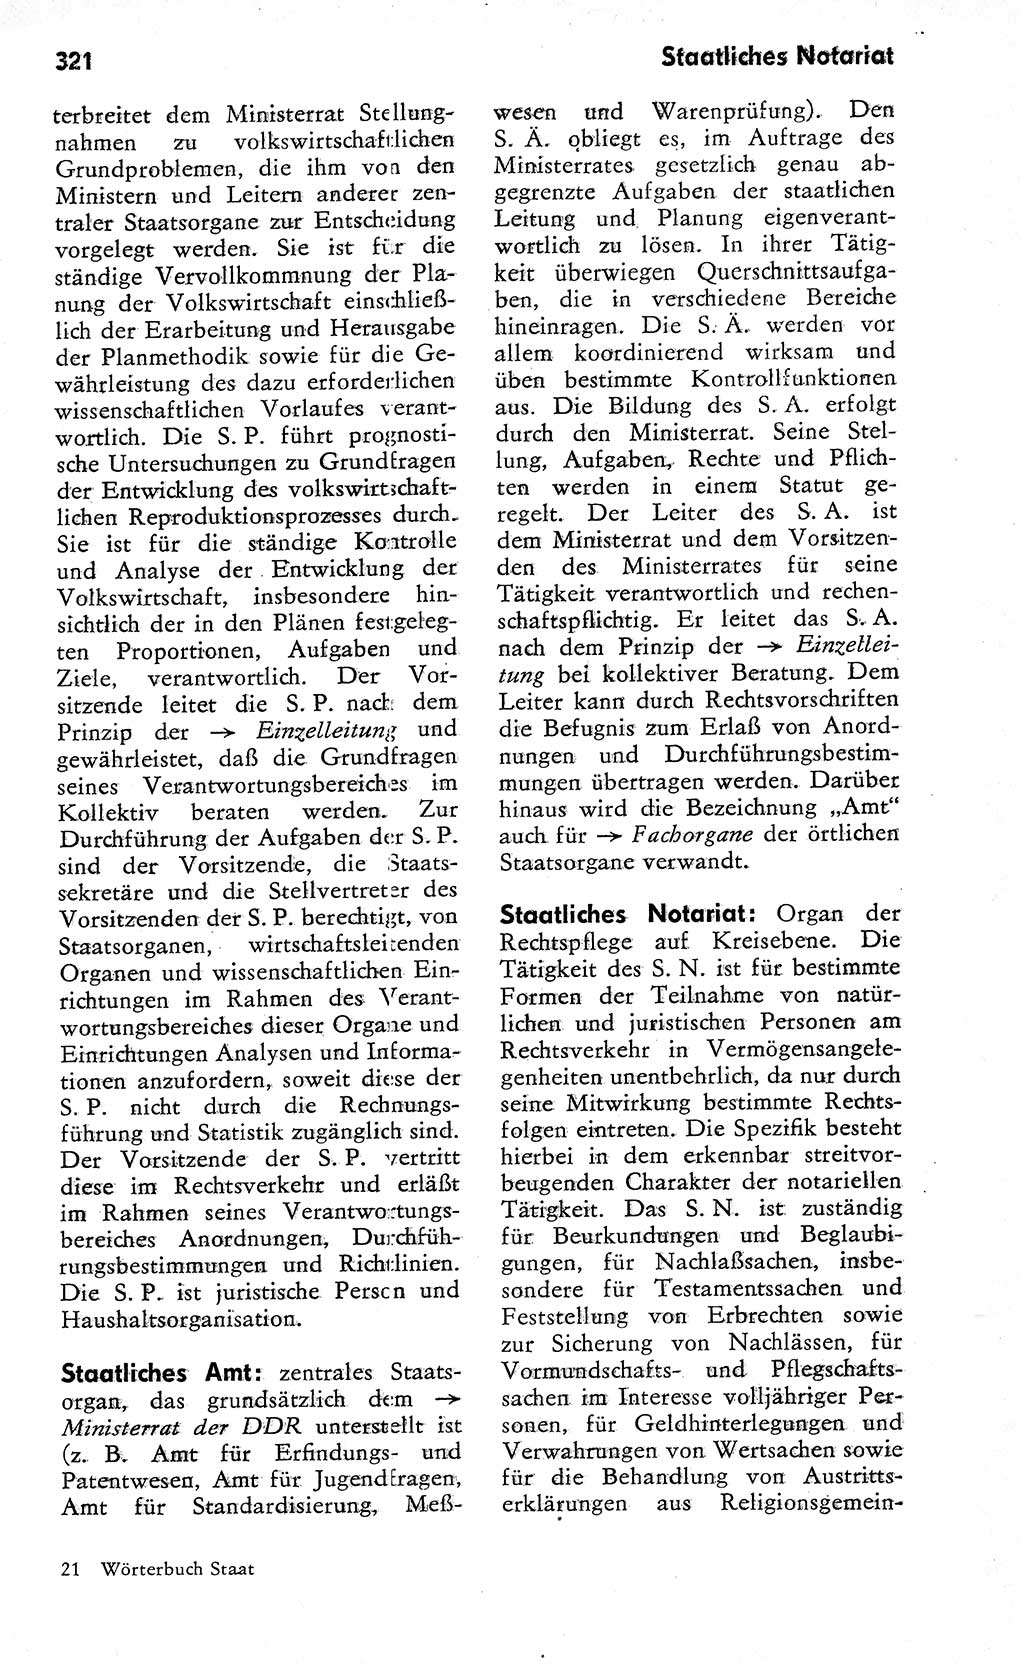 Wörterbuch zum sozialistischen Staat [Deutsche Demokratische Republik (DDR)] 1974, Seite 321 (Wb. soz. St. DDR 1974, S. 321)